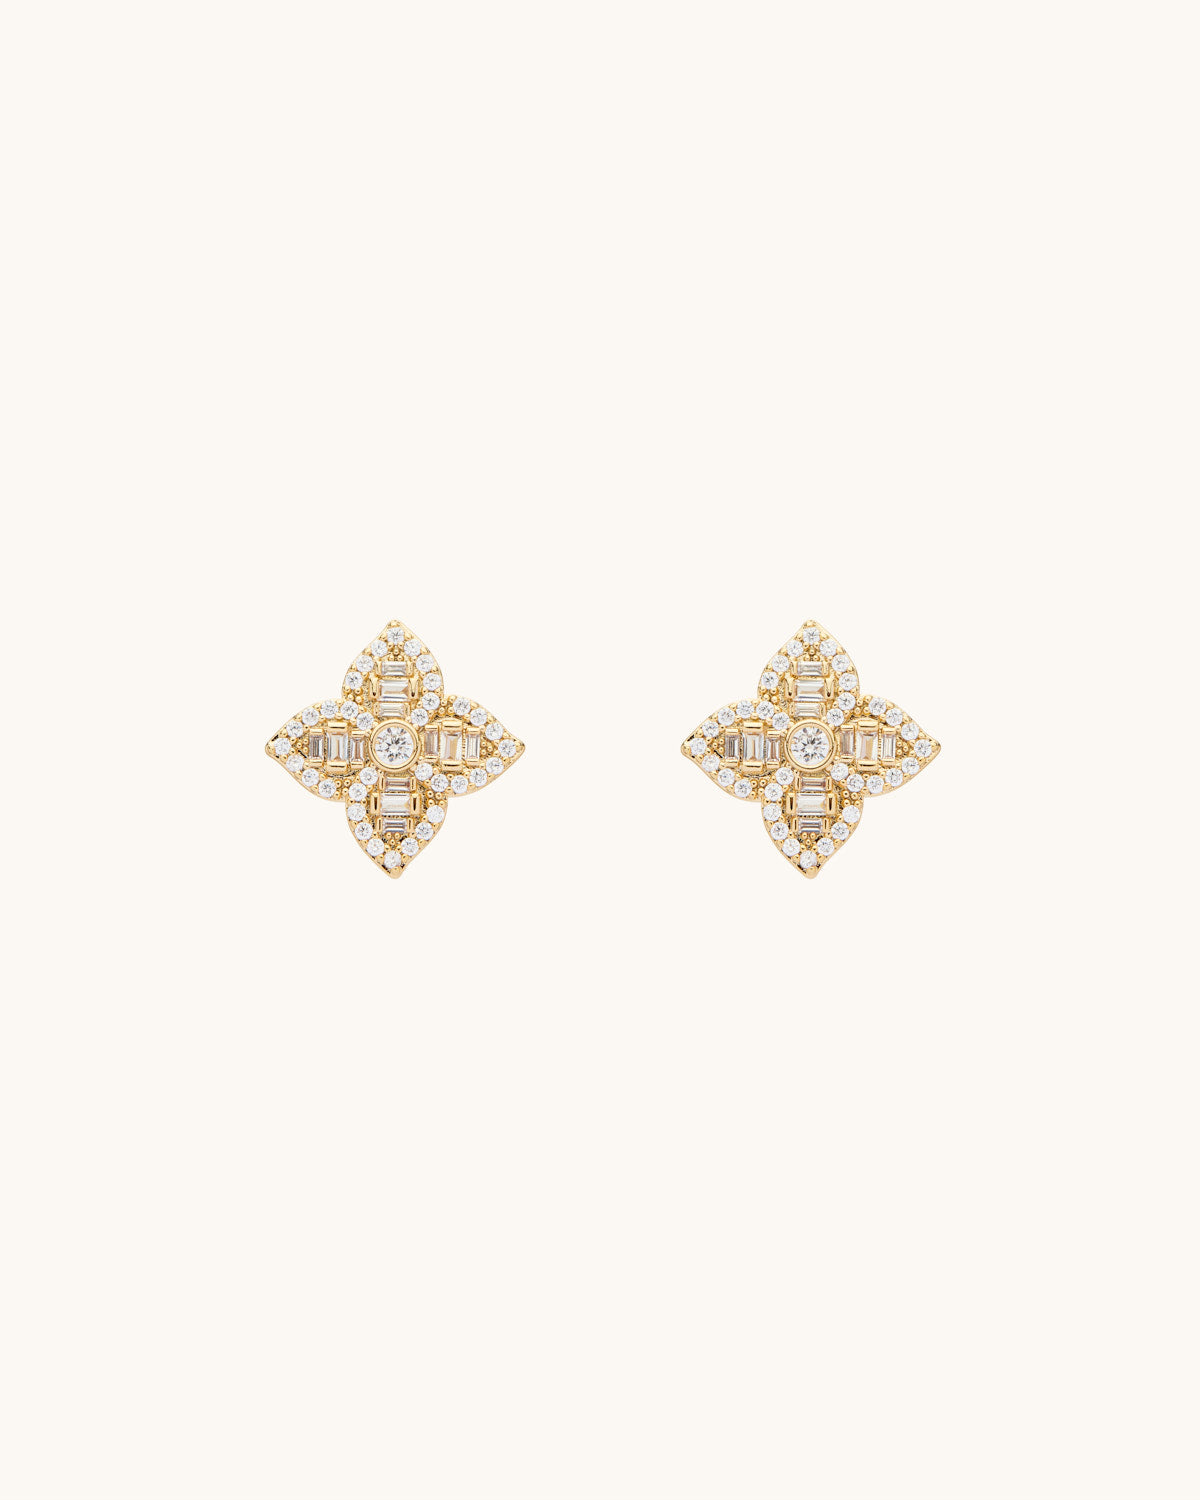 Regal Gold Earrings